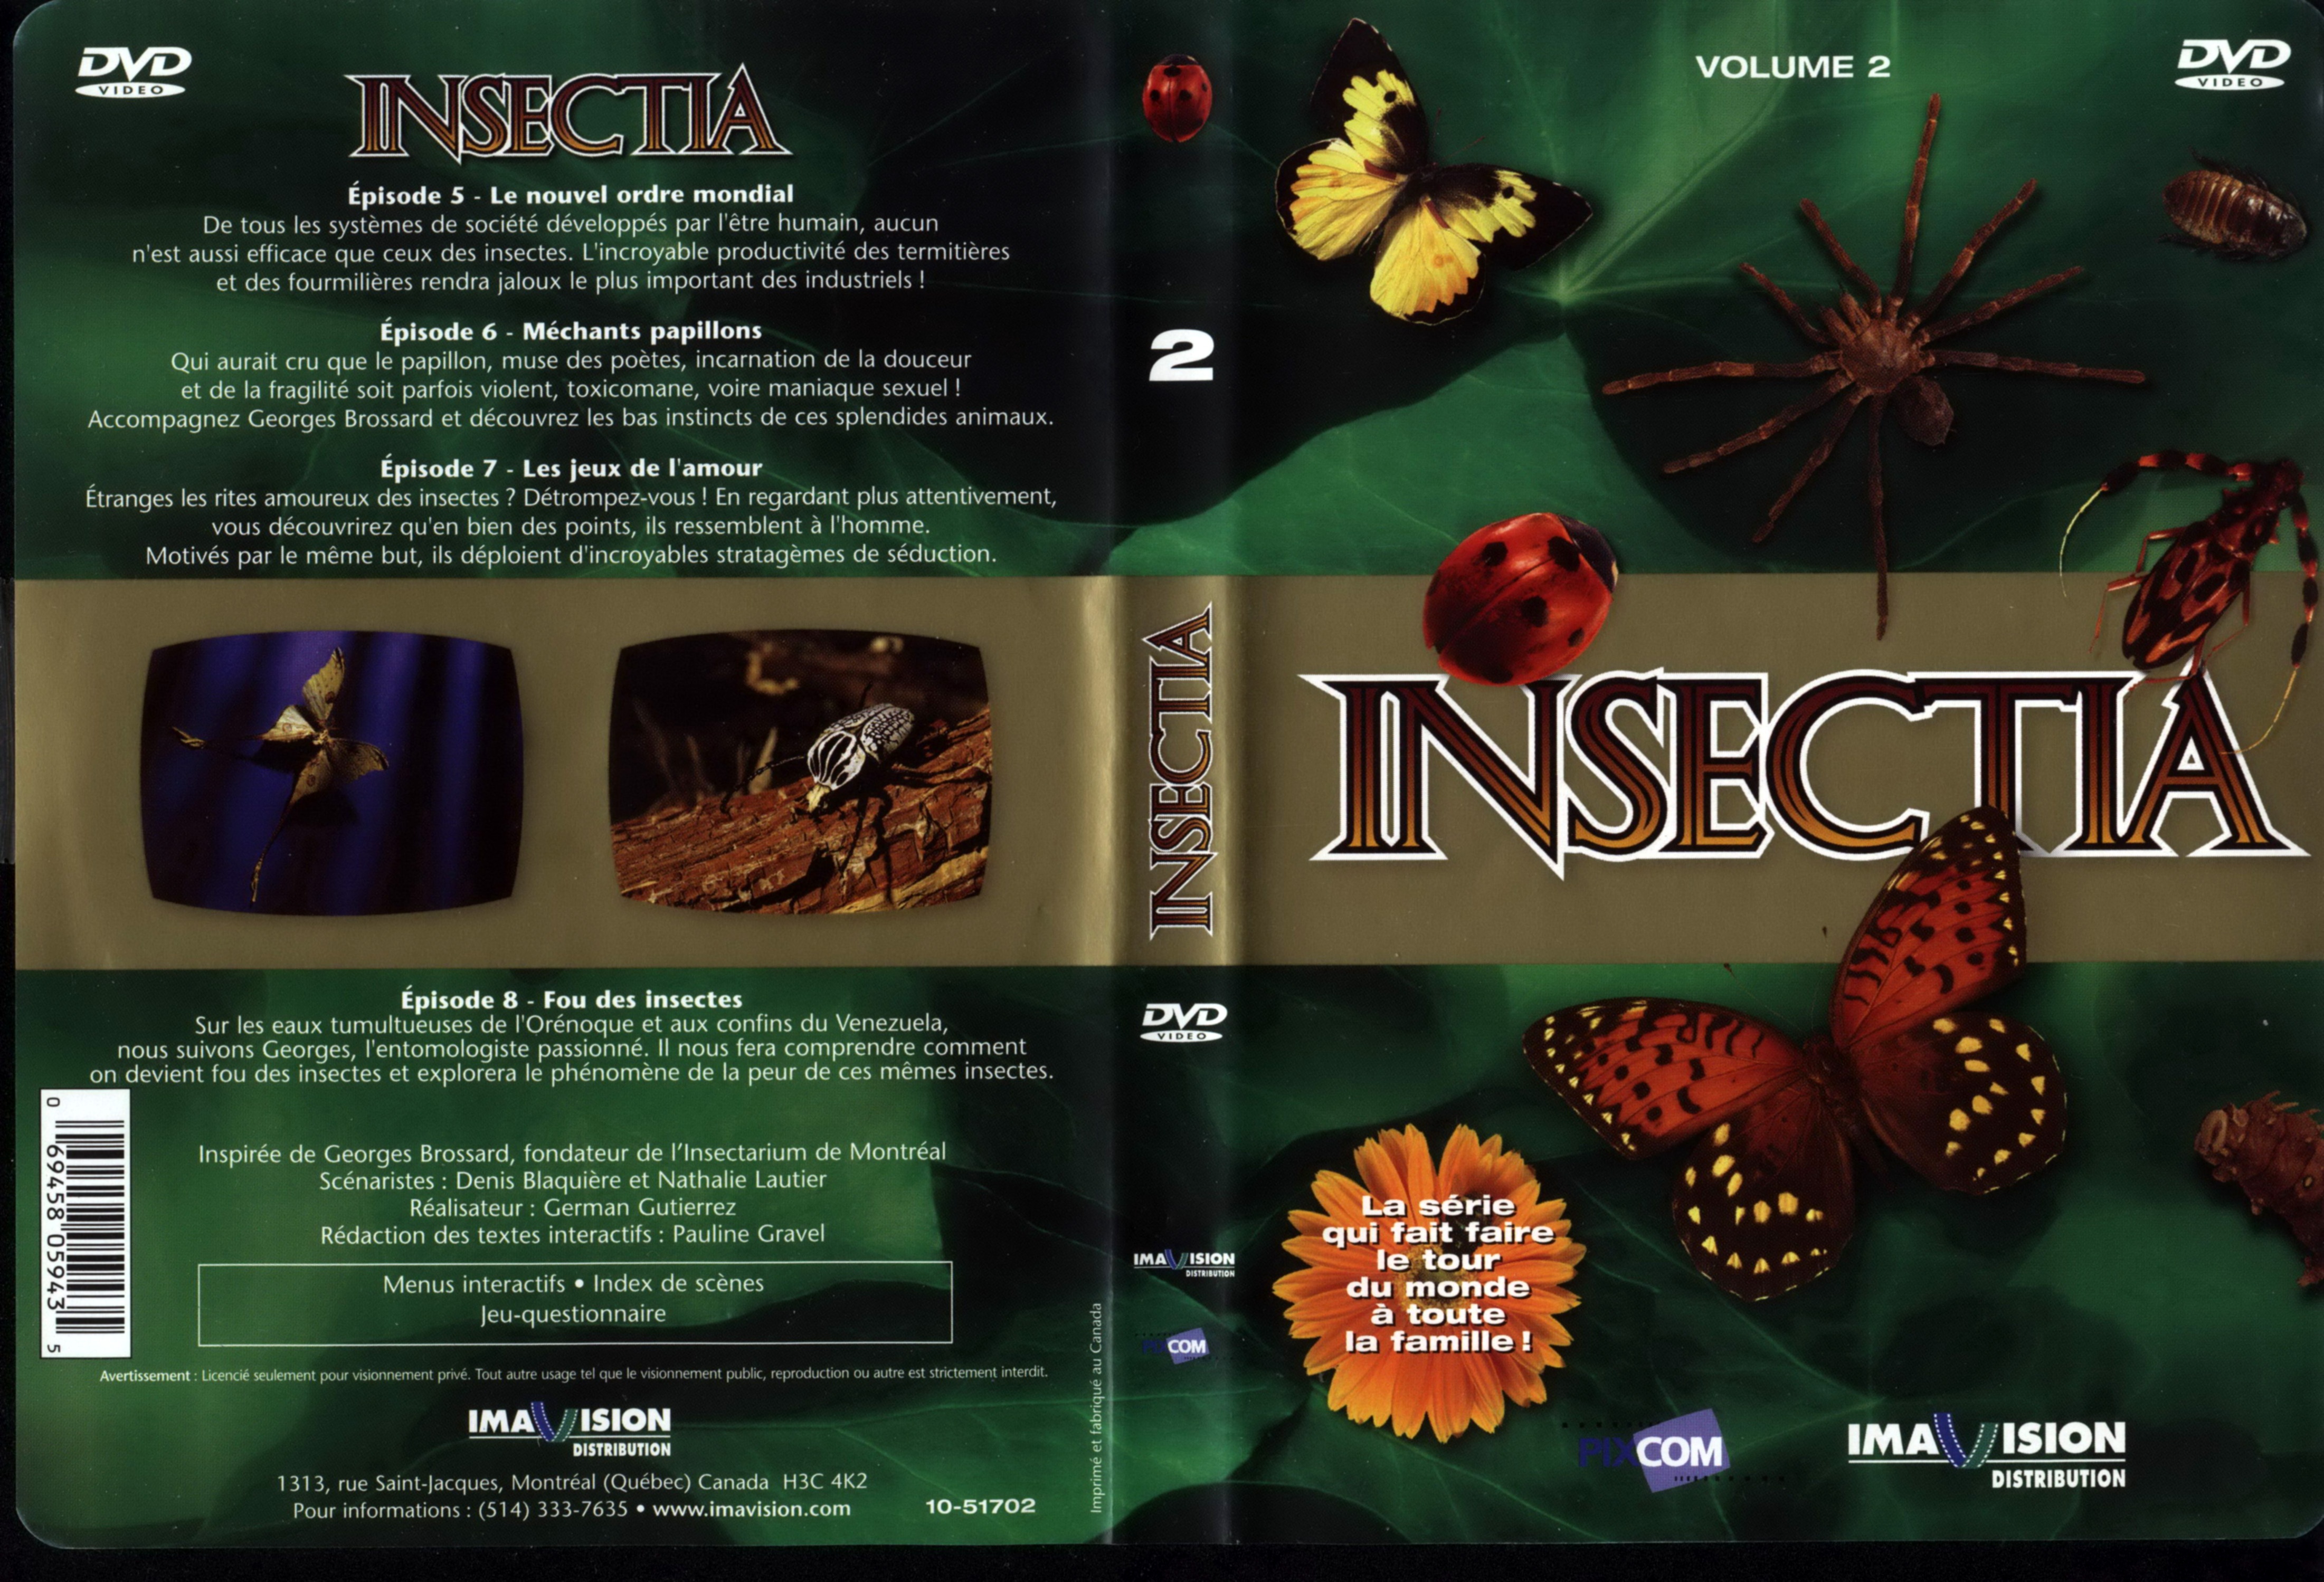 Jaquette DVD Insectia vol 2